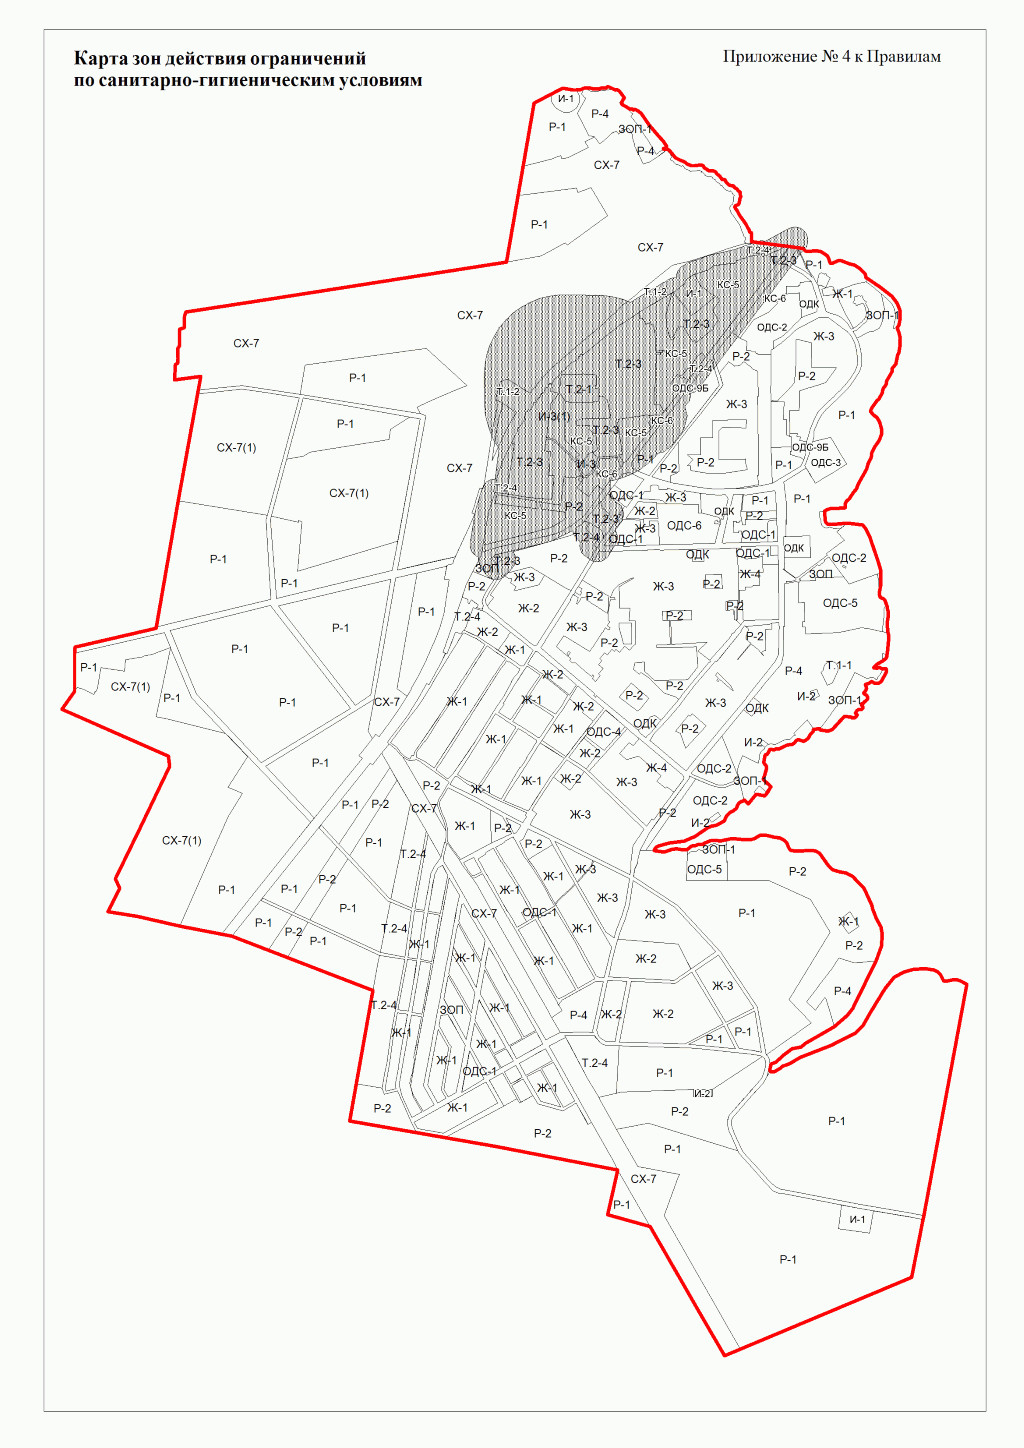 Карта зон действия ограничений по санитарно-гигиеническим условиям посёлка Рефтинский